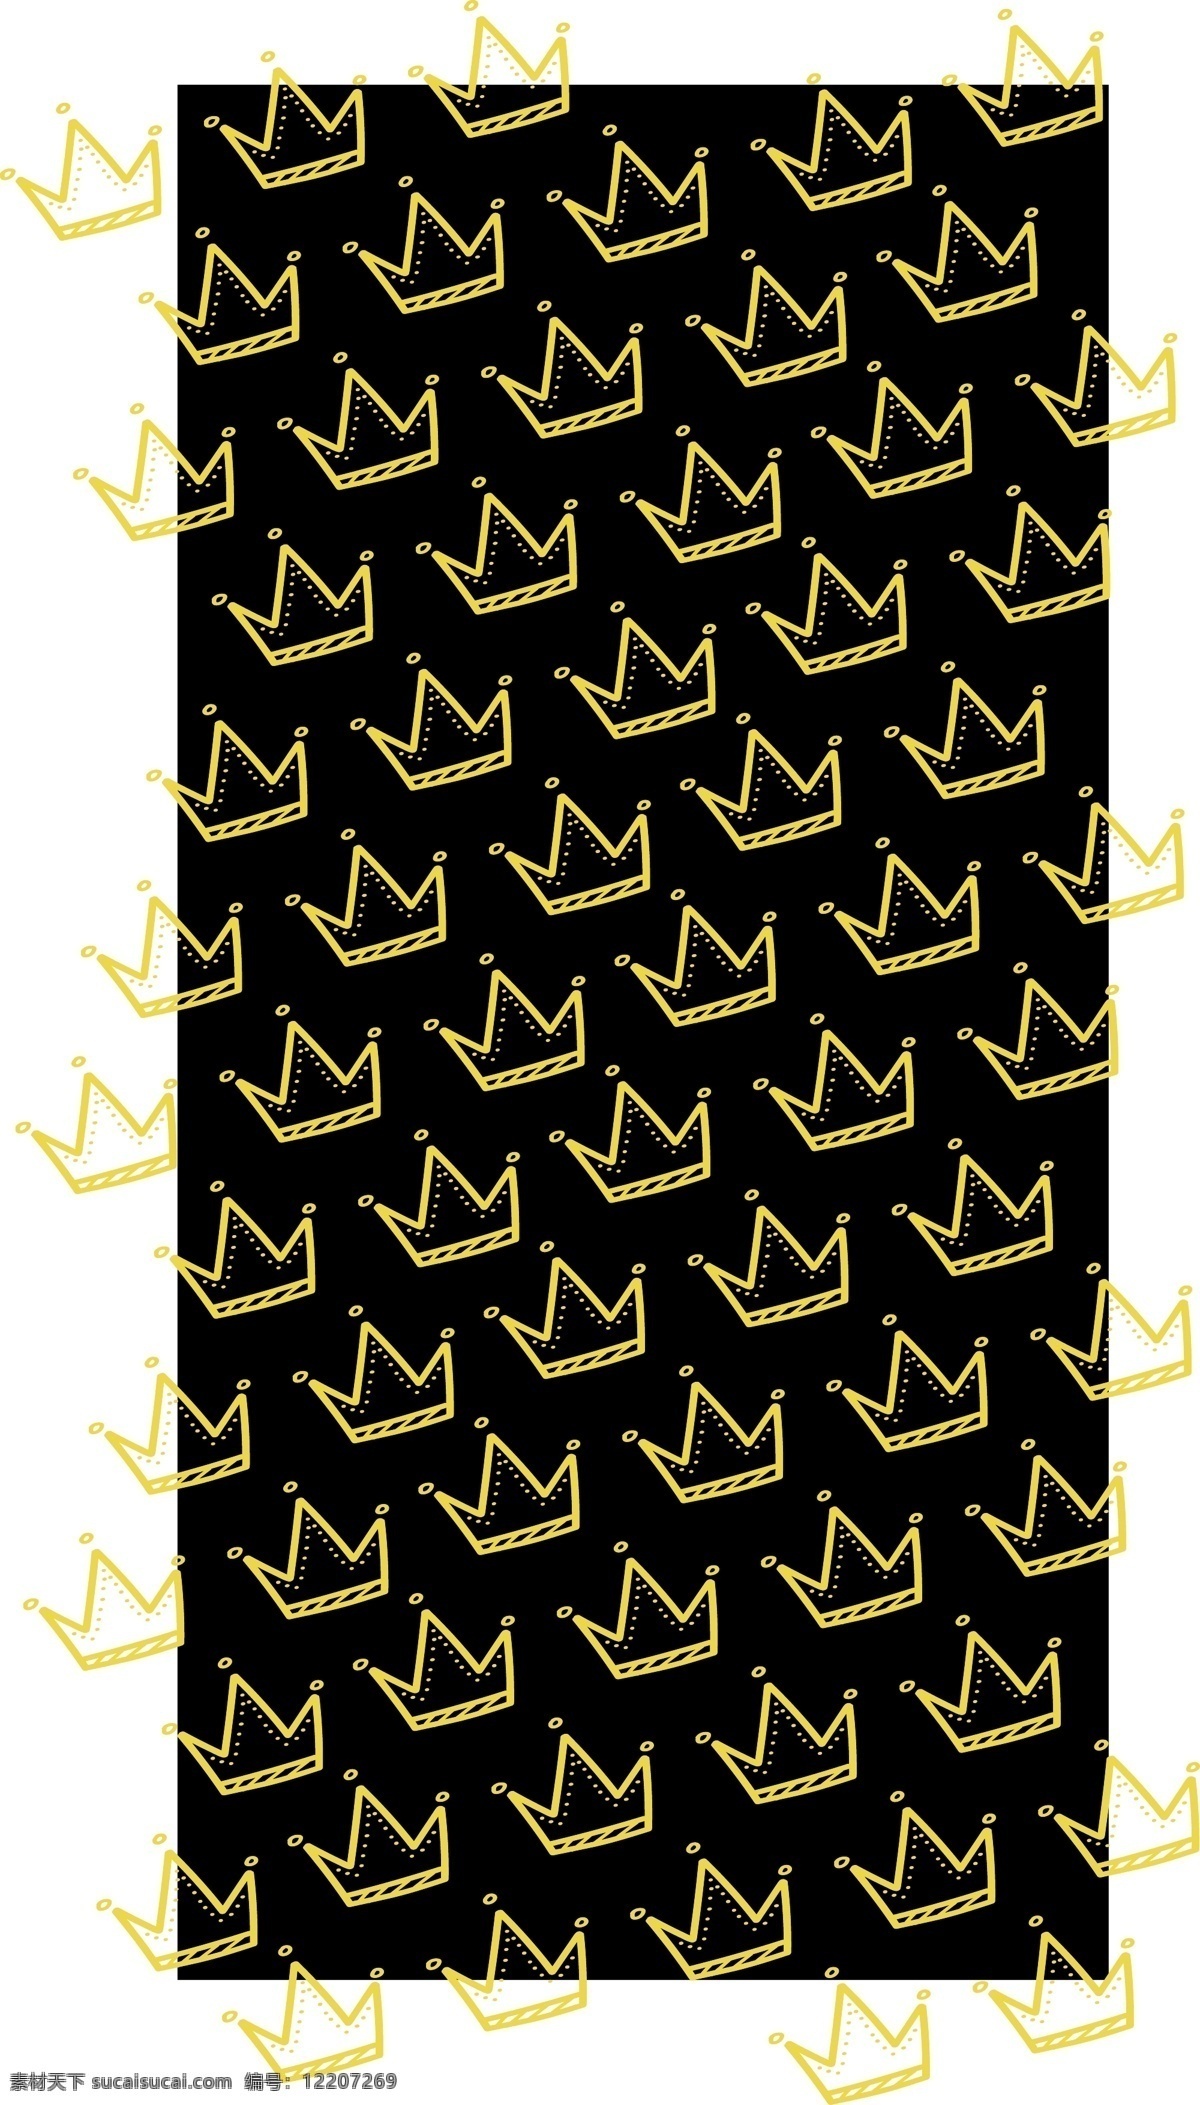 原创 线 框 皇冠 平铺 黑色 背景 手机壳 线框 边线 黄色 下拉 电子机械包装